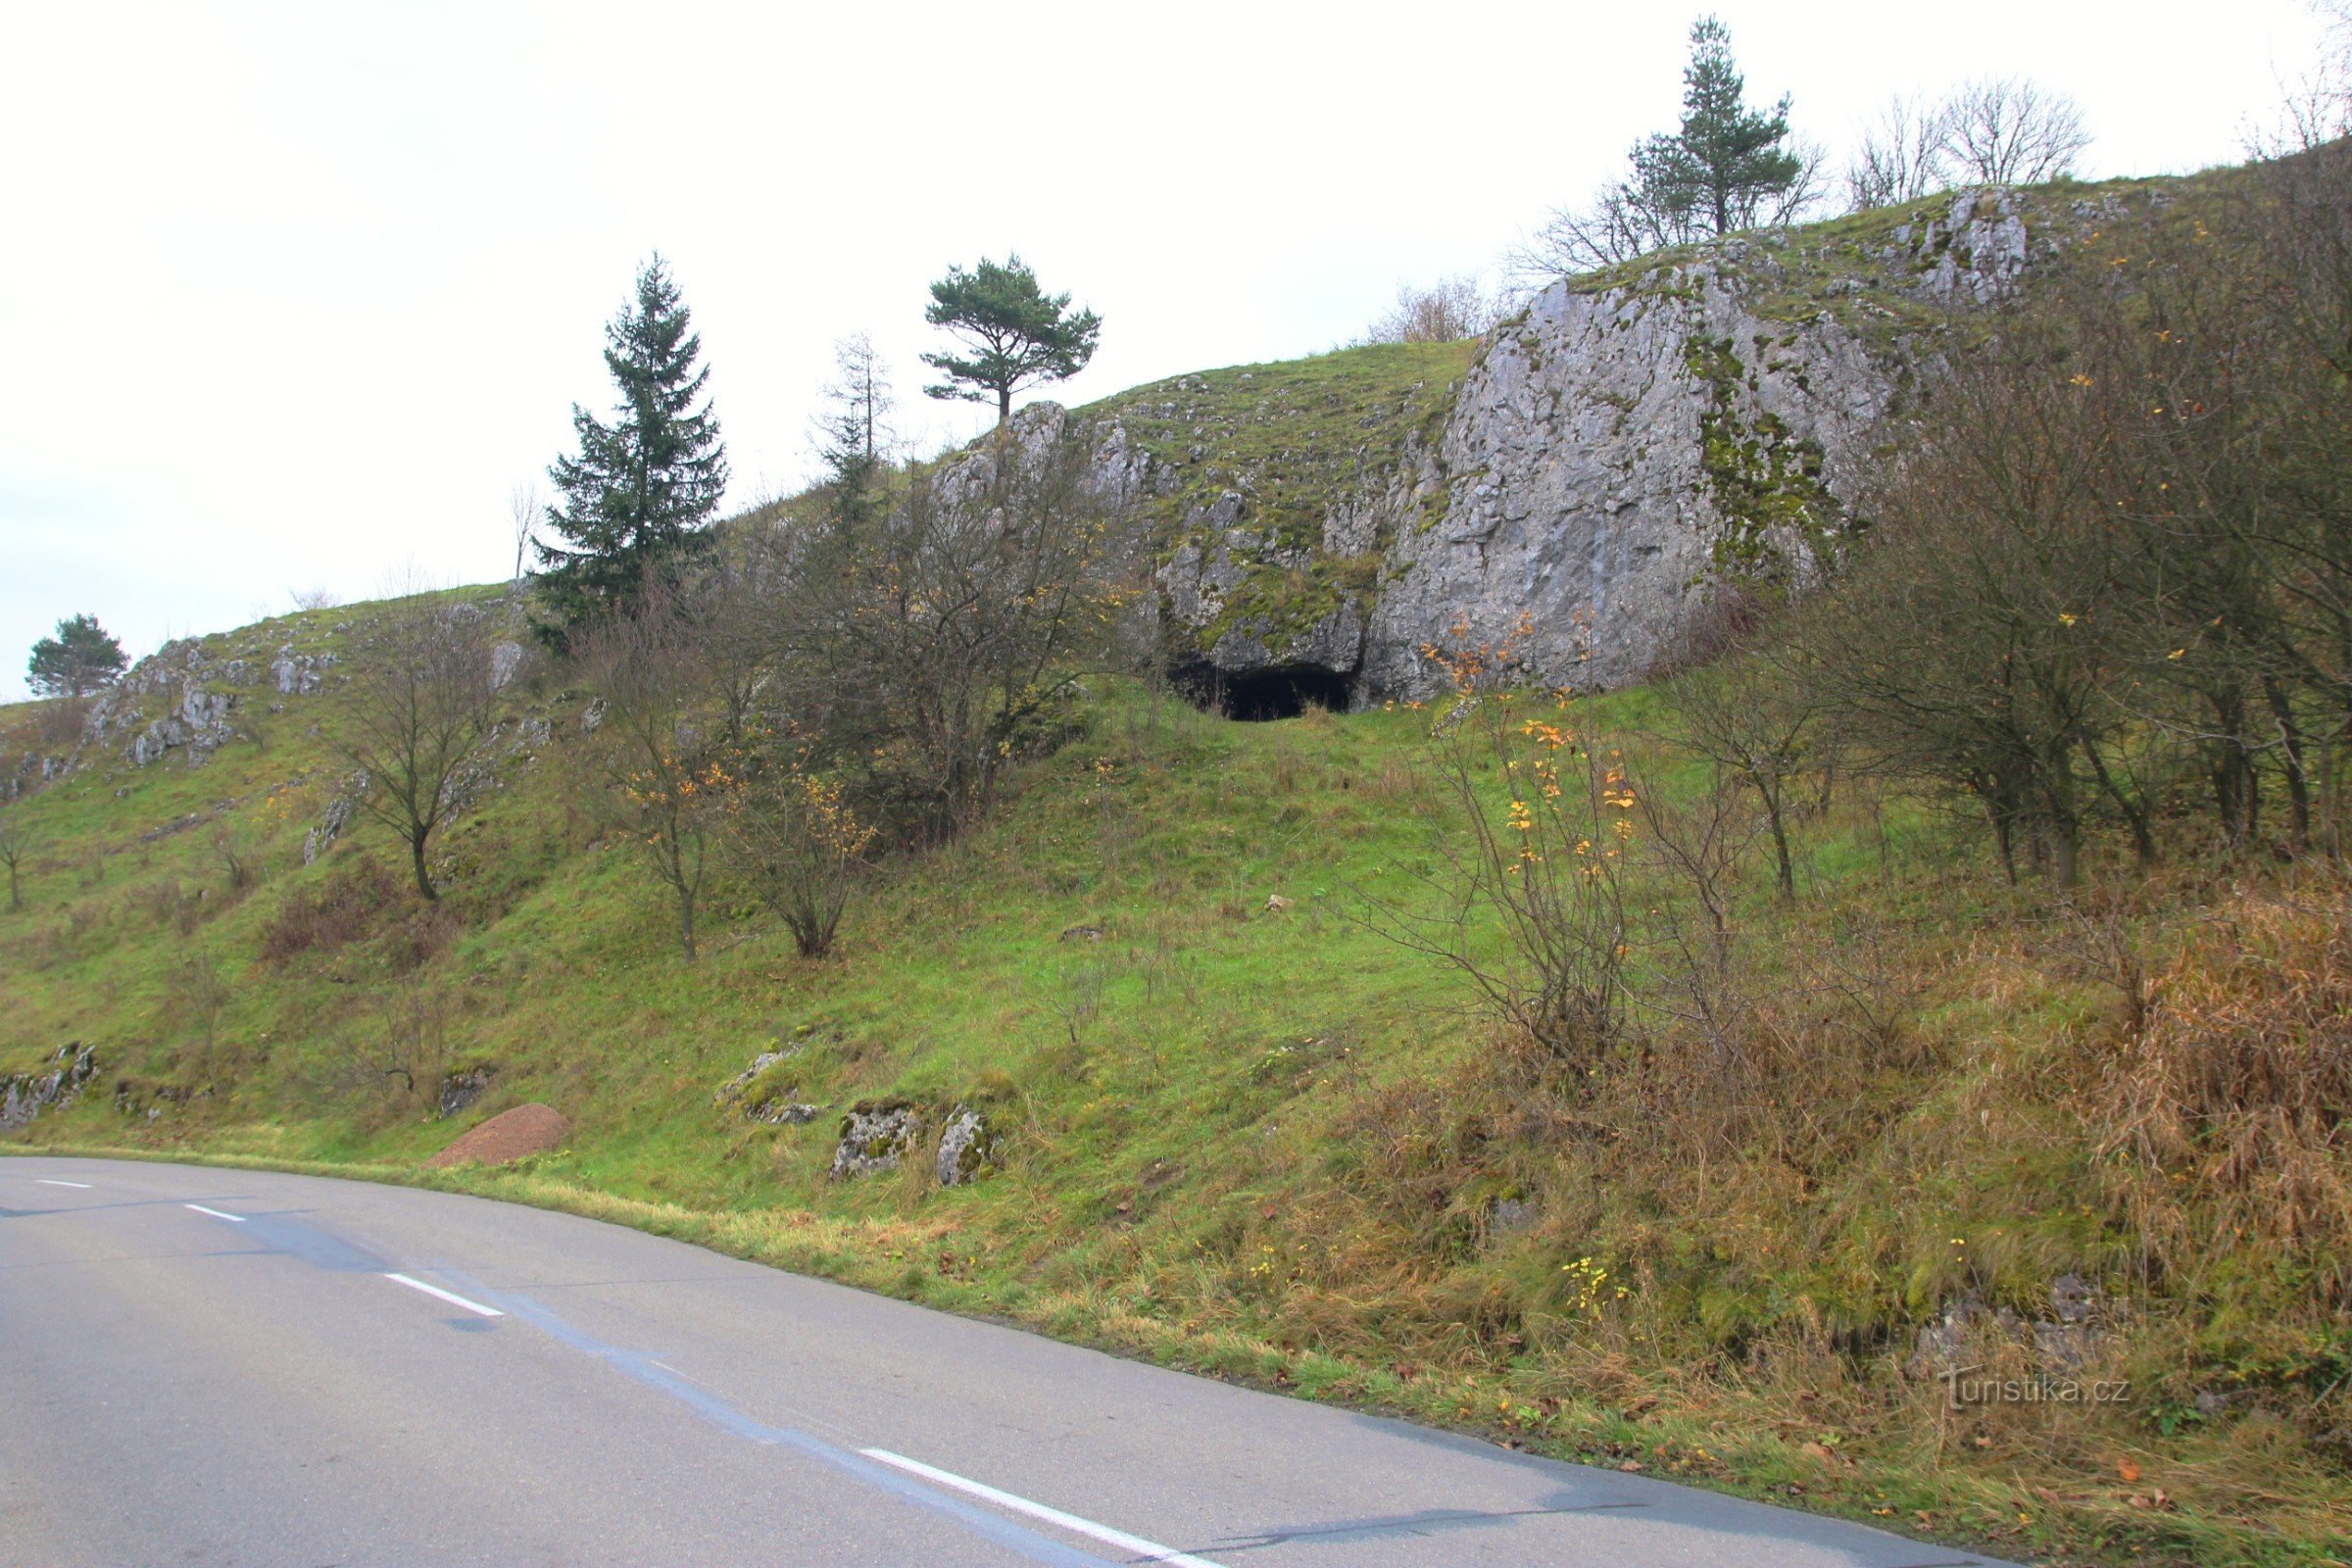 Der Höhleneingang ist von der Straße aus gut sichtbar